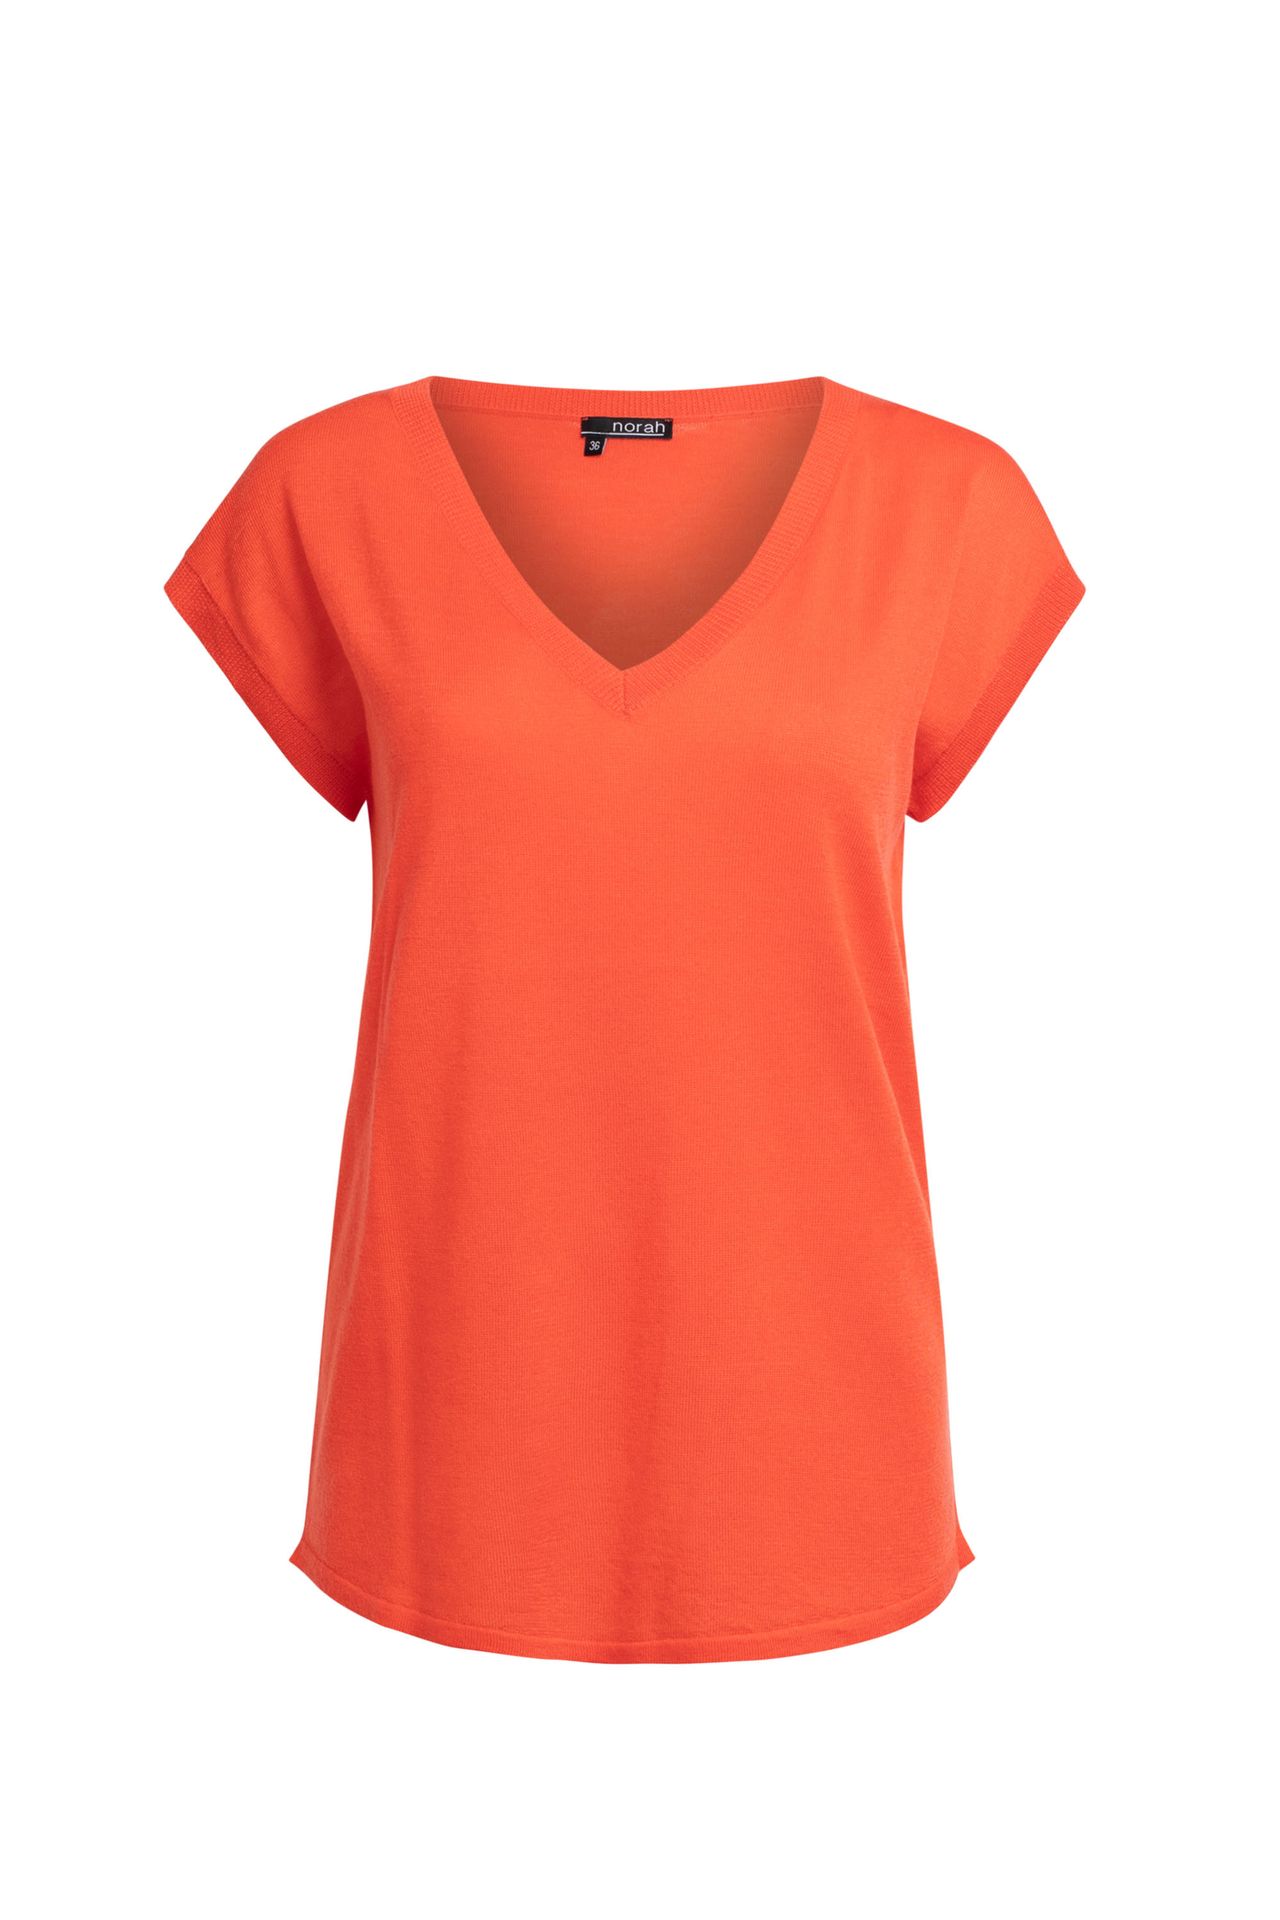 Norah Trui oranje korte mouwen neon orange 211395-723